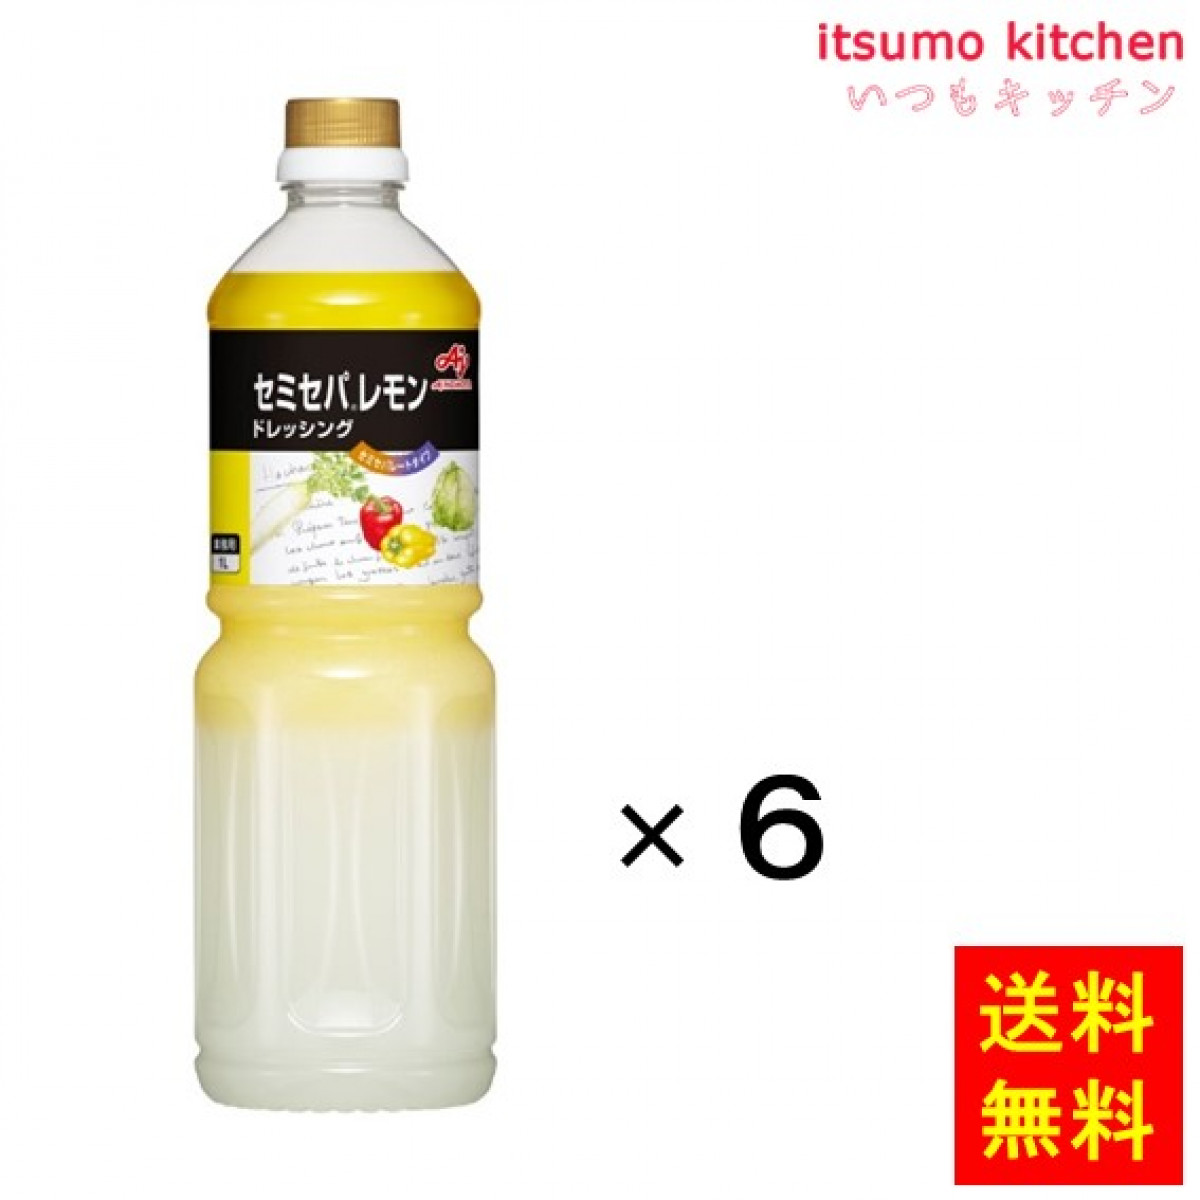 183298x6 【送料無料】業務用「セミセパ」レモンドレッシング 1Lボトル 1Lx6本 味の素 - いつもキッチン